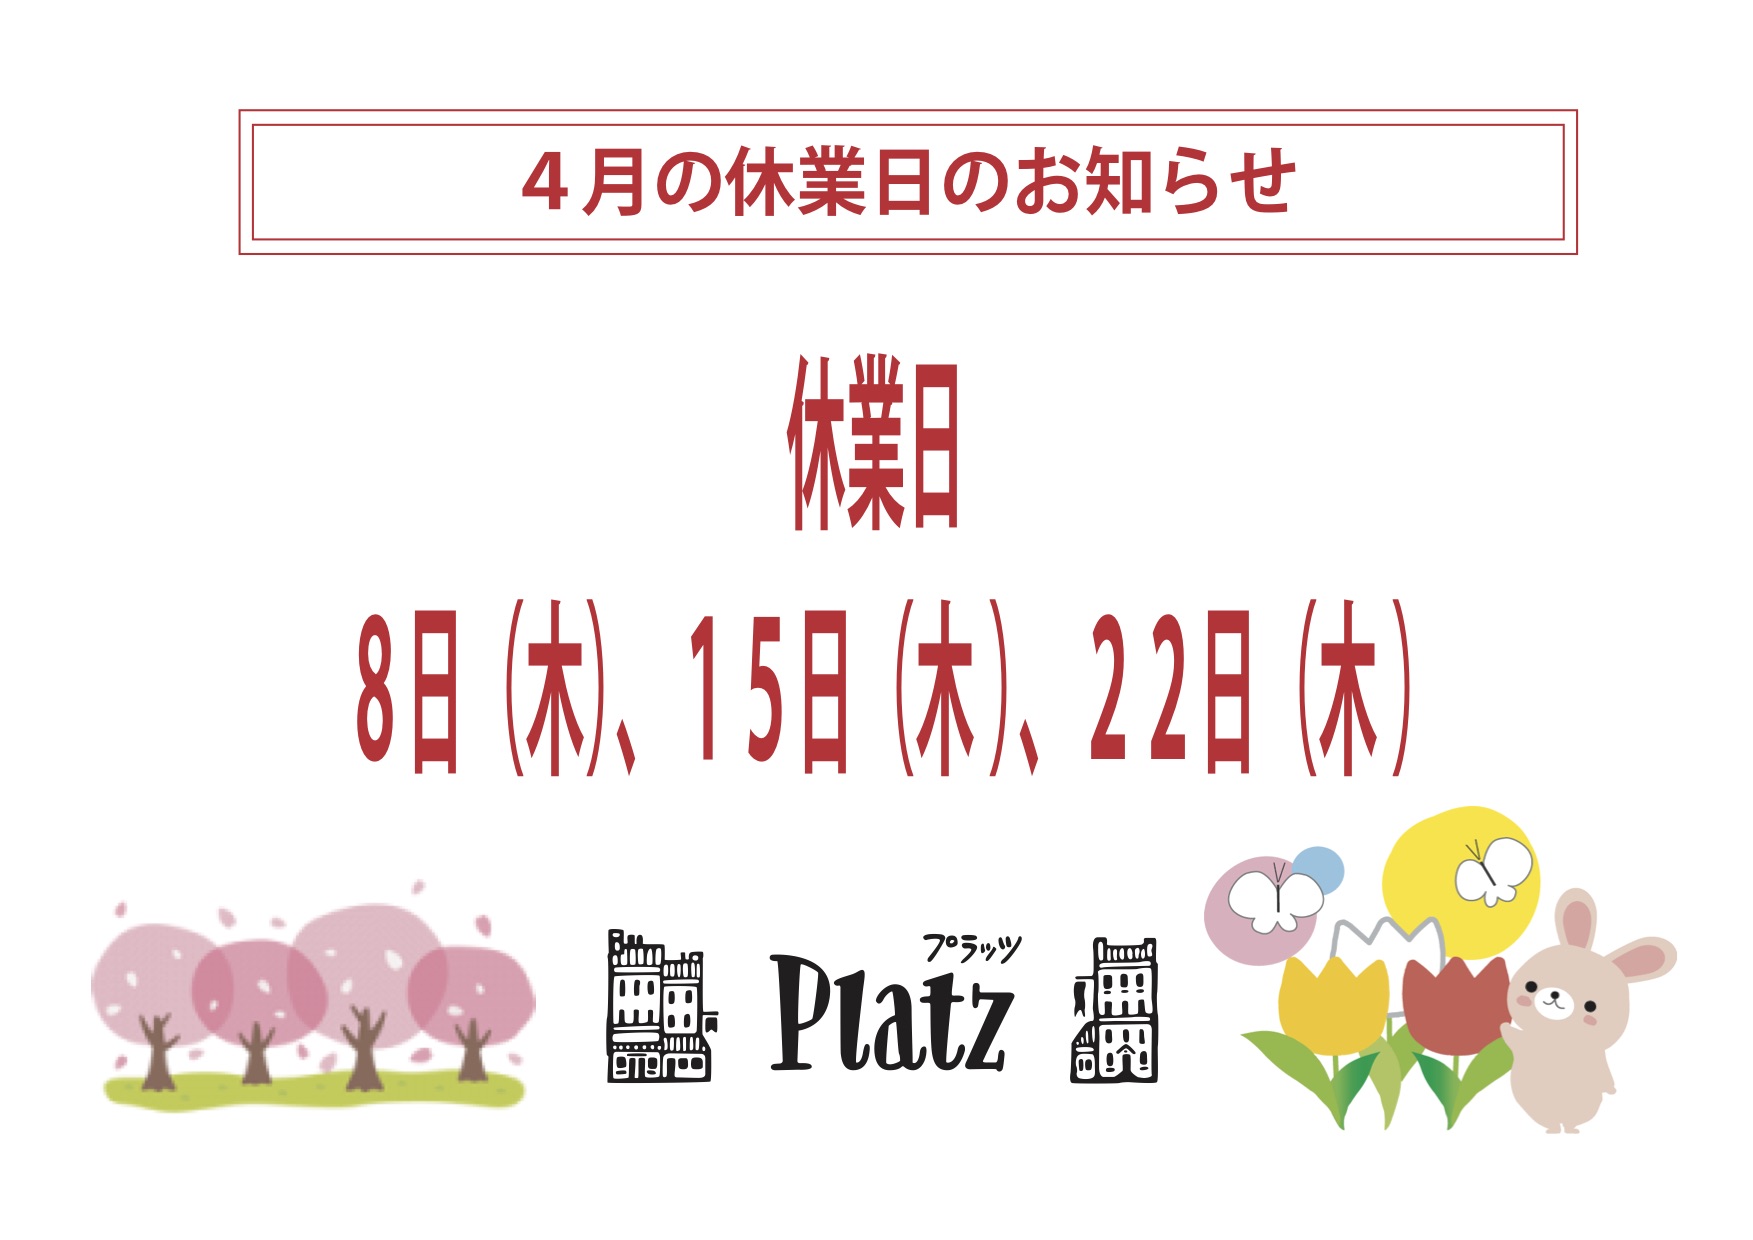 http://www.kyoto-platz.jp/news/images/2021.4%E6%9C%88%E4%BC%91%E6%A5%AD%E6%97%A5.jpg